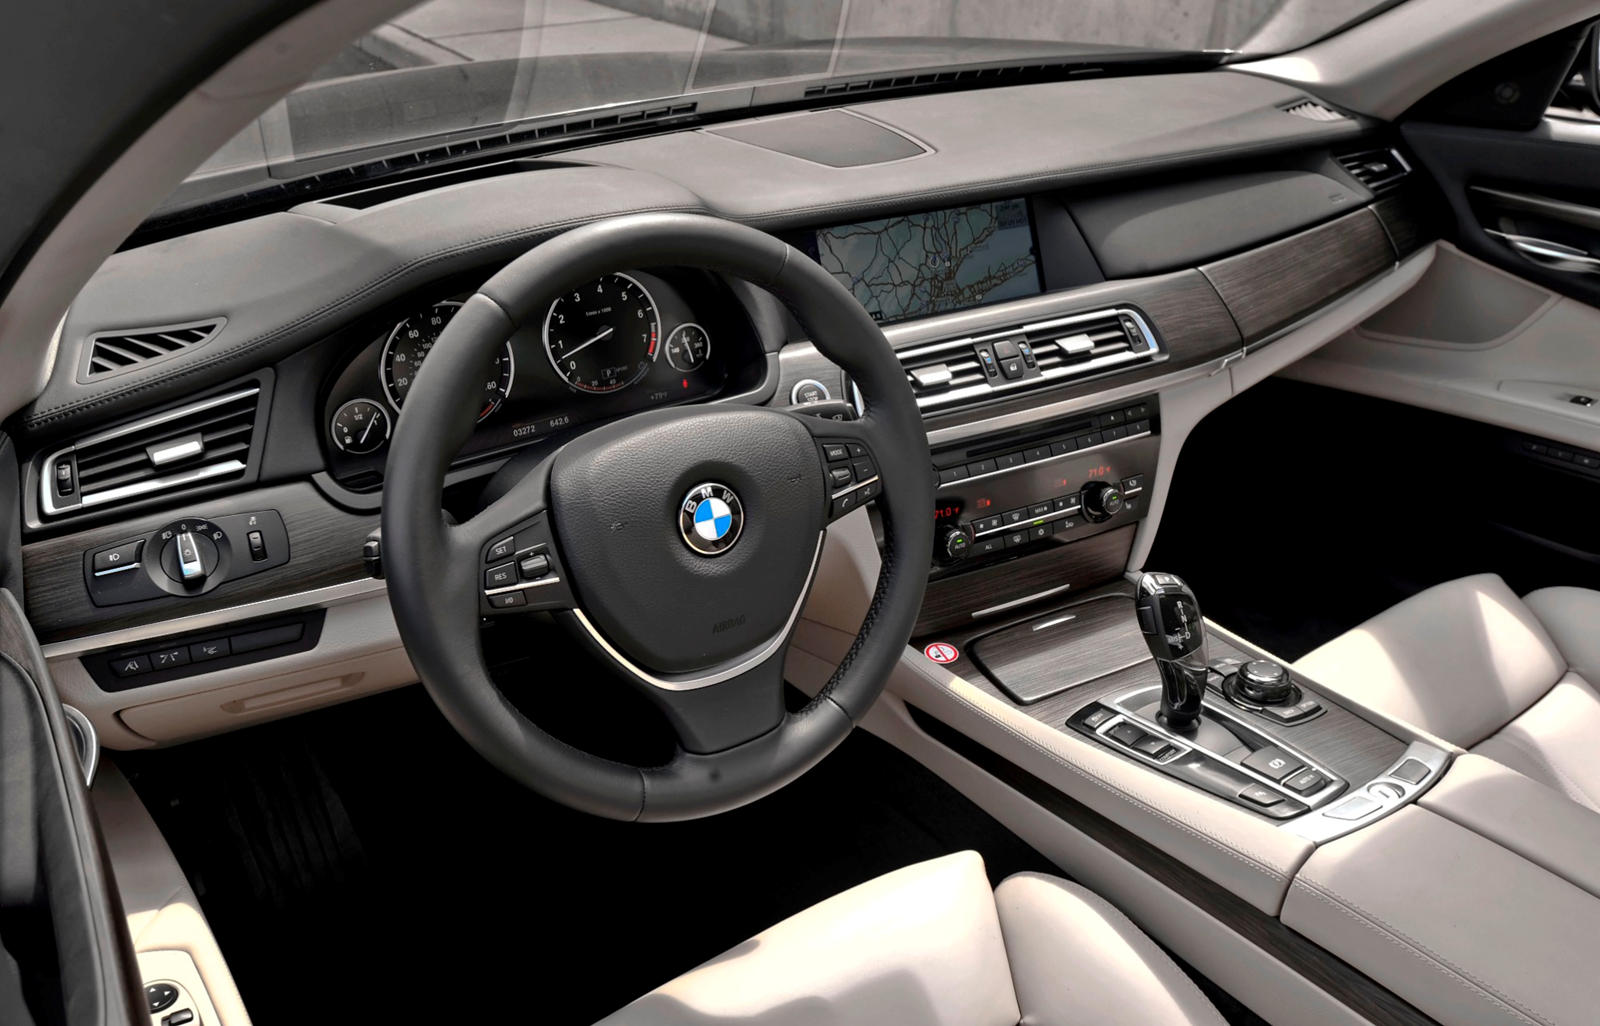 2011 BMW 7 Series Hybrid Dashboard